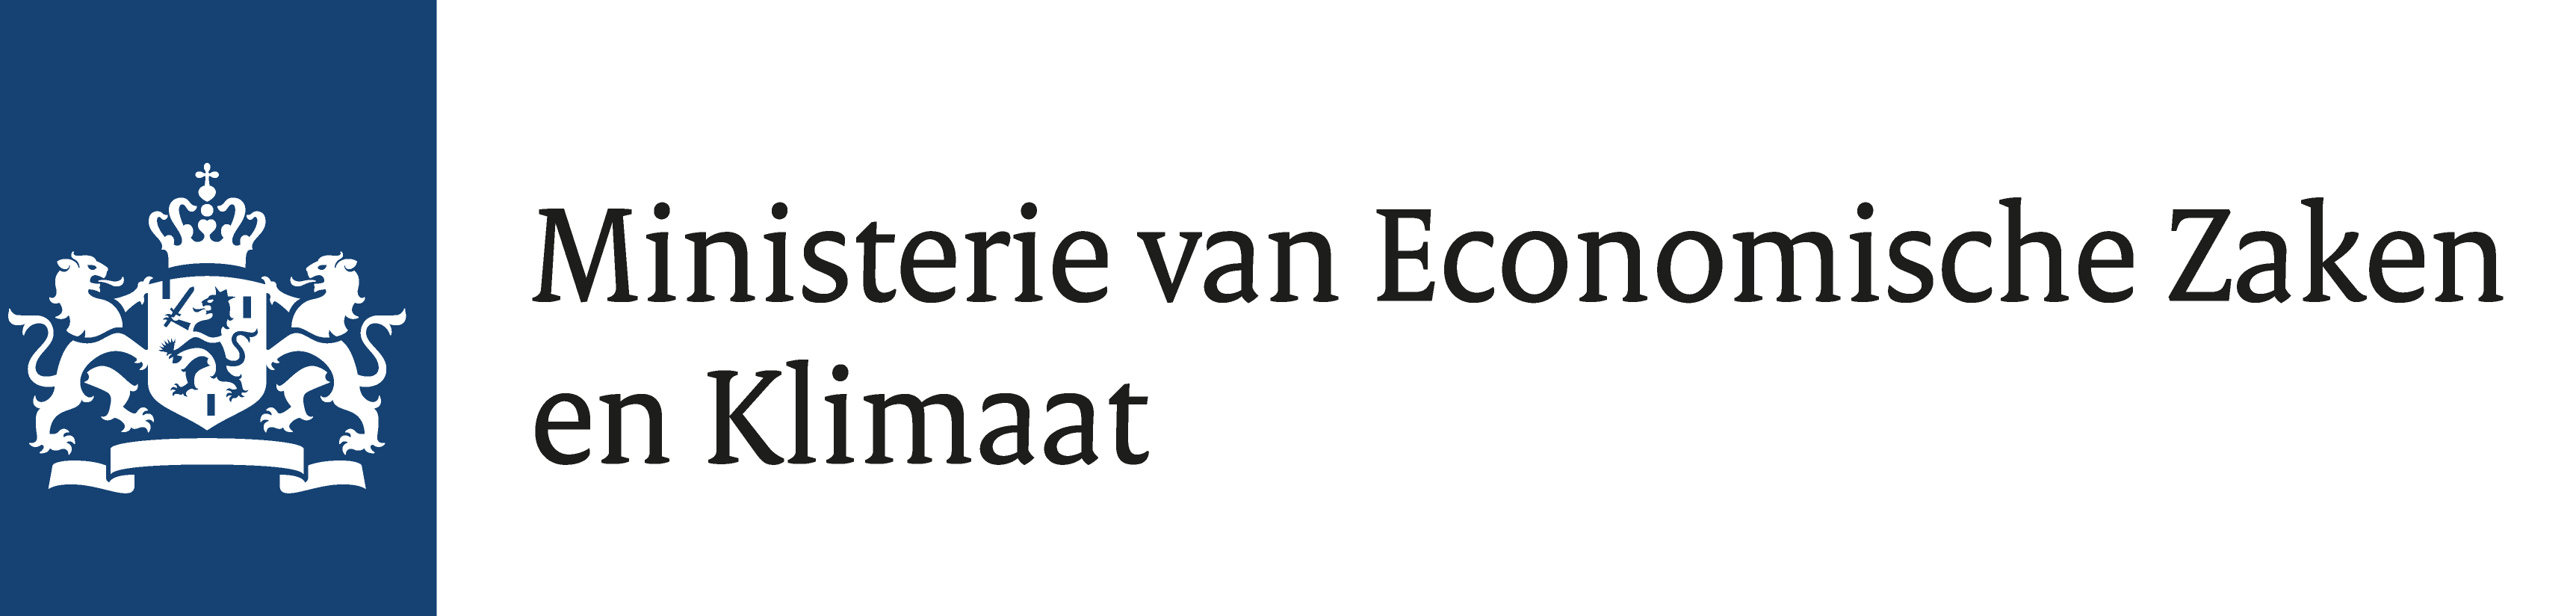 Ministerie_van_Economische_Zaken_en_Klimaat_Logo